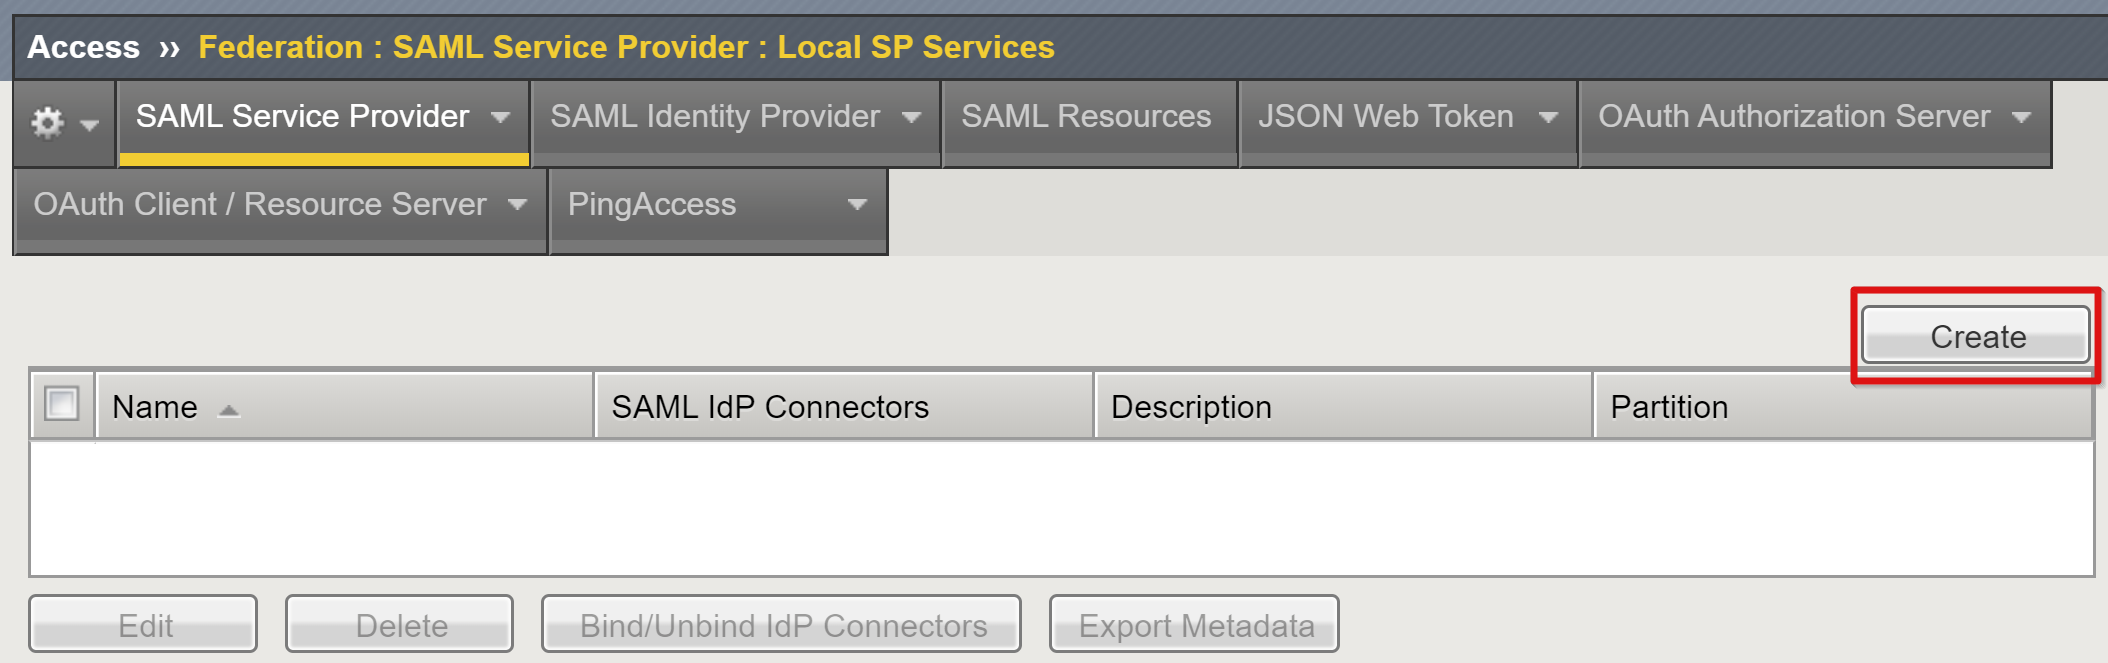 لقطة شاشة لخيار Create في صفحة Local SP Services.